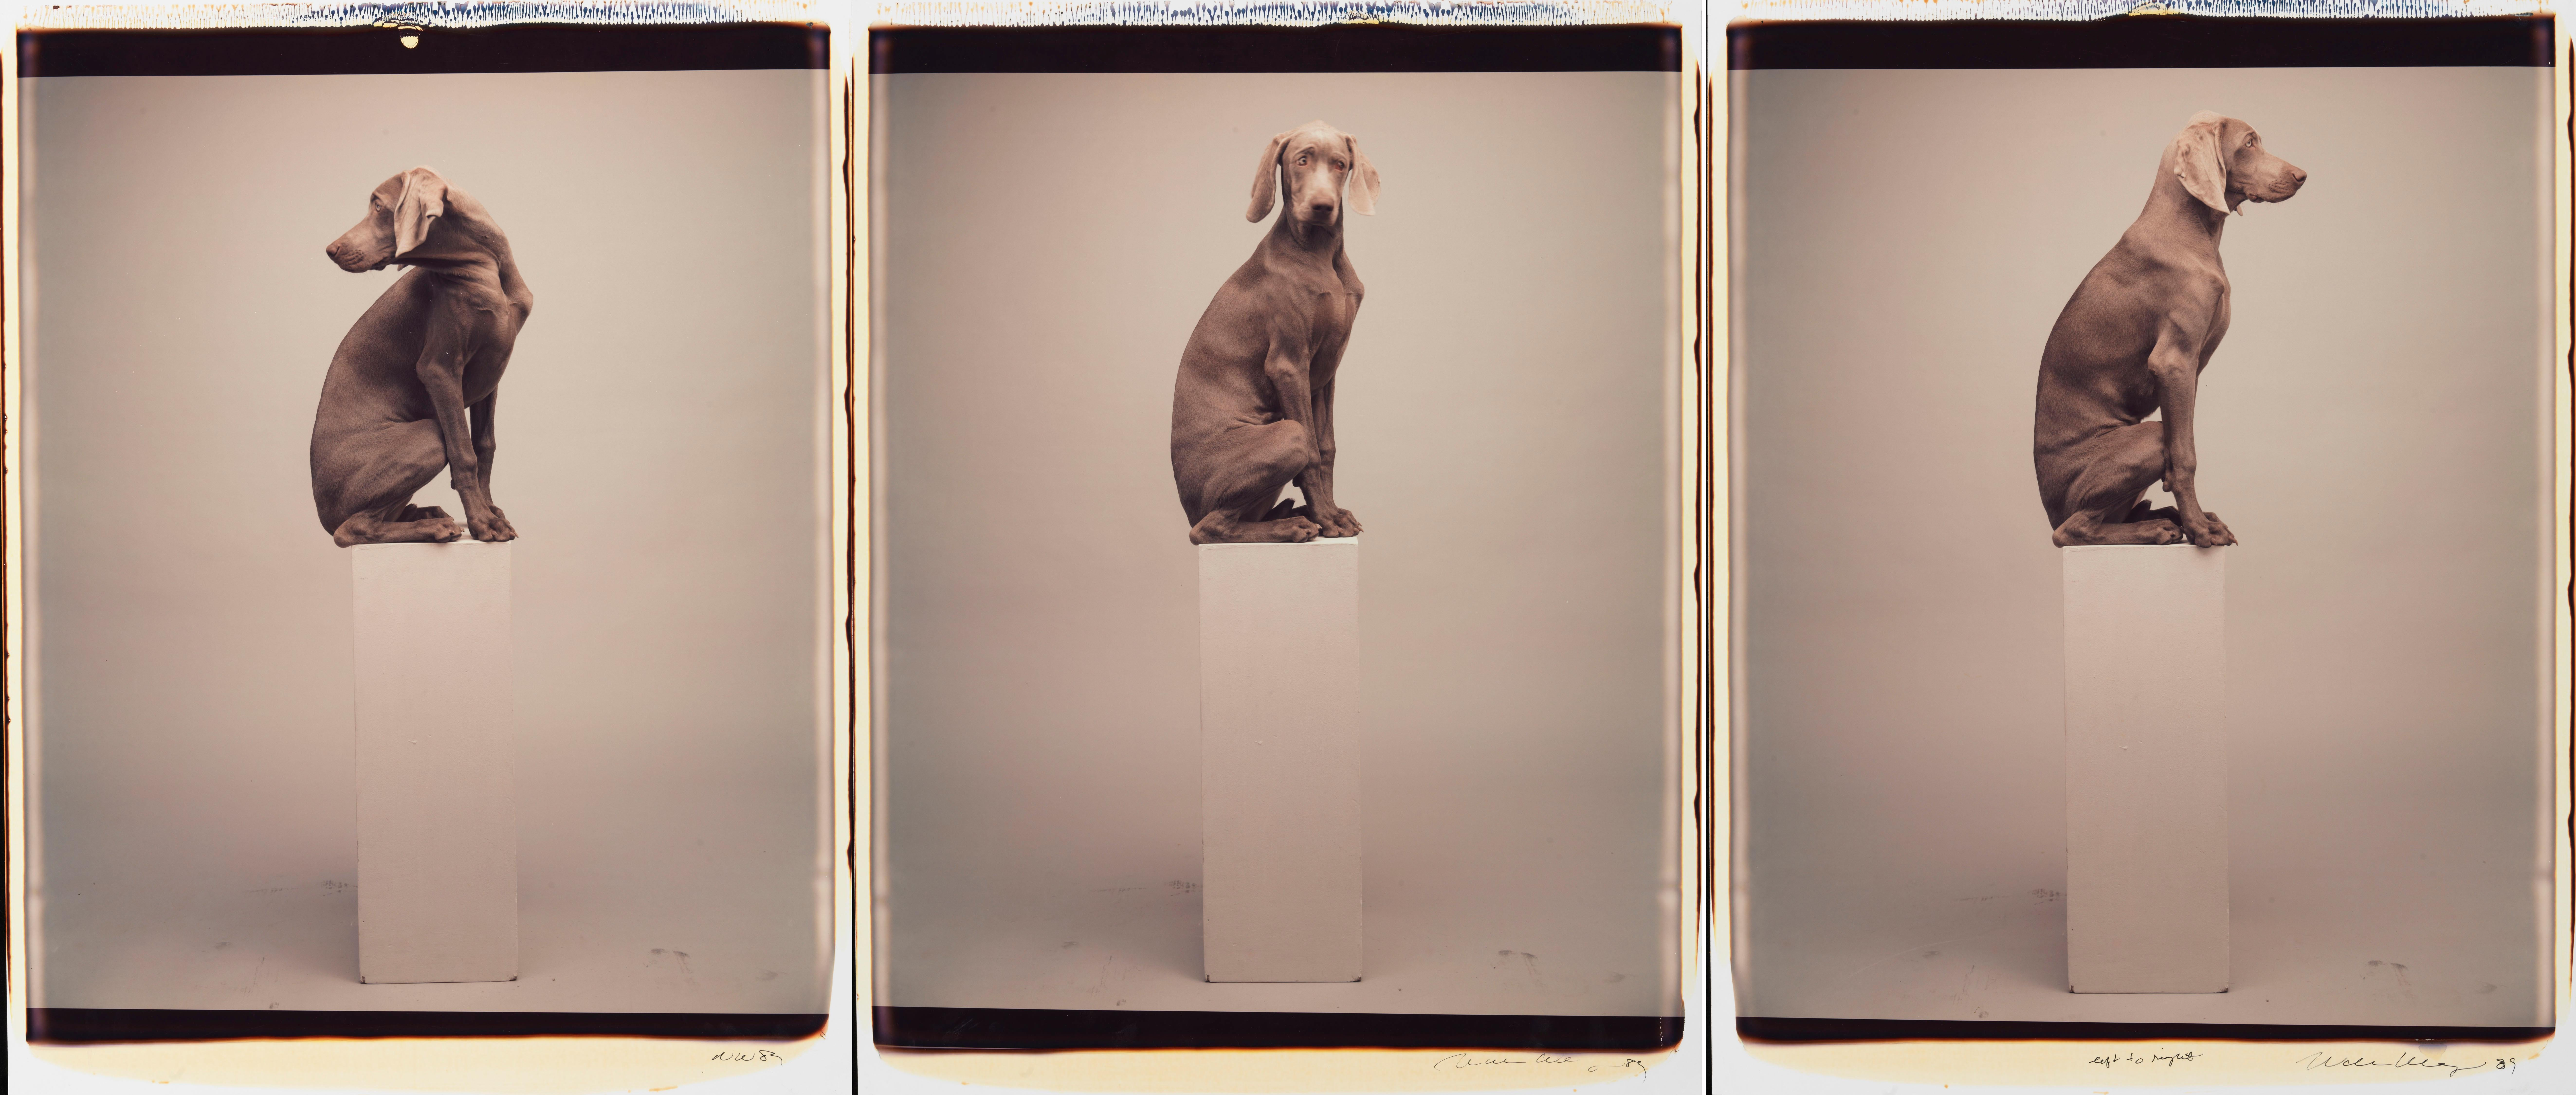 De gauche à droite - William Wegman (Photographie couleur)
Signé et inscrit avec le titre
Trois tirages Polaroid couleur uniques, imprimés en 1989
24 x 20 pouces chacun

Les chiens, perruqués et parés de tenues et d'accessoires, présentent un large